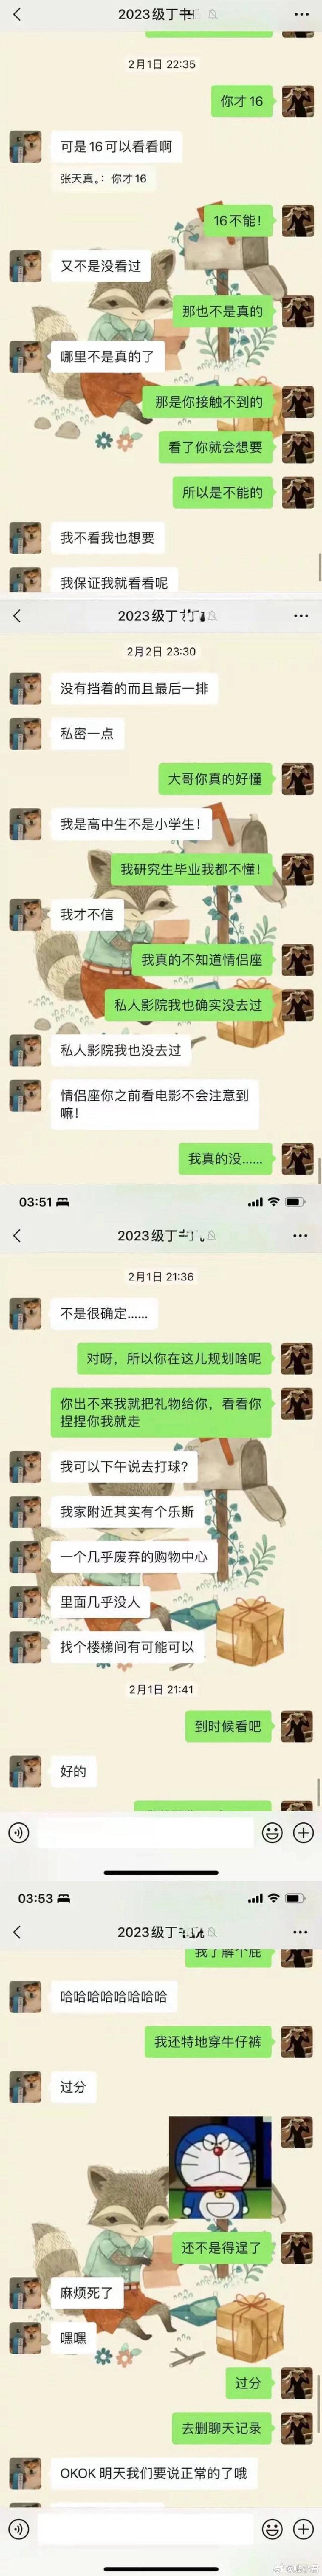 上海女教师出轨16岁学生被开除